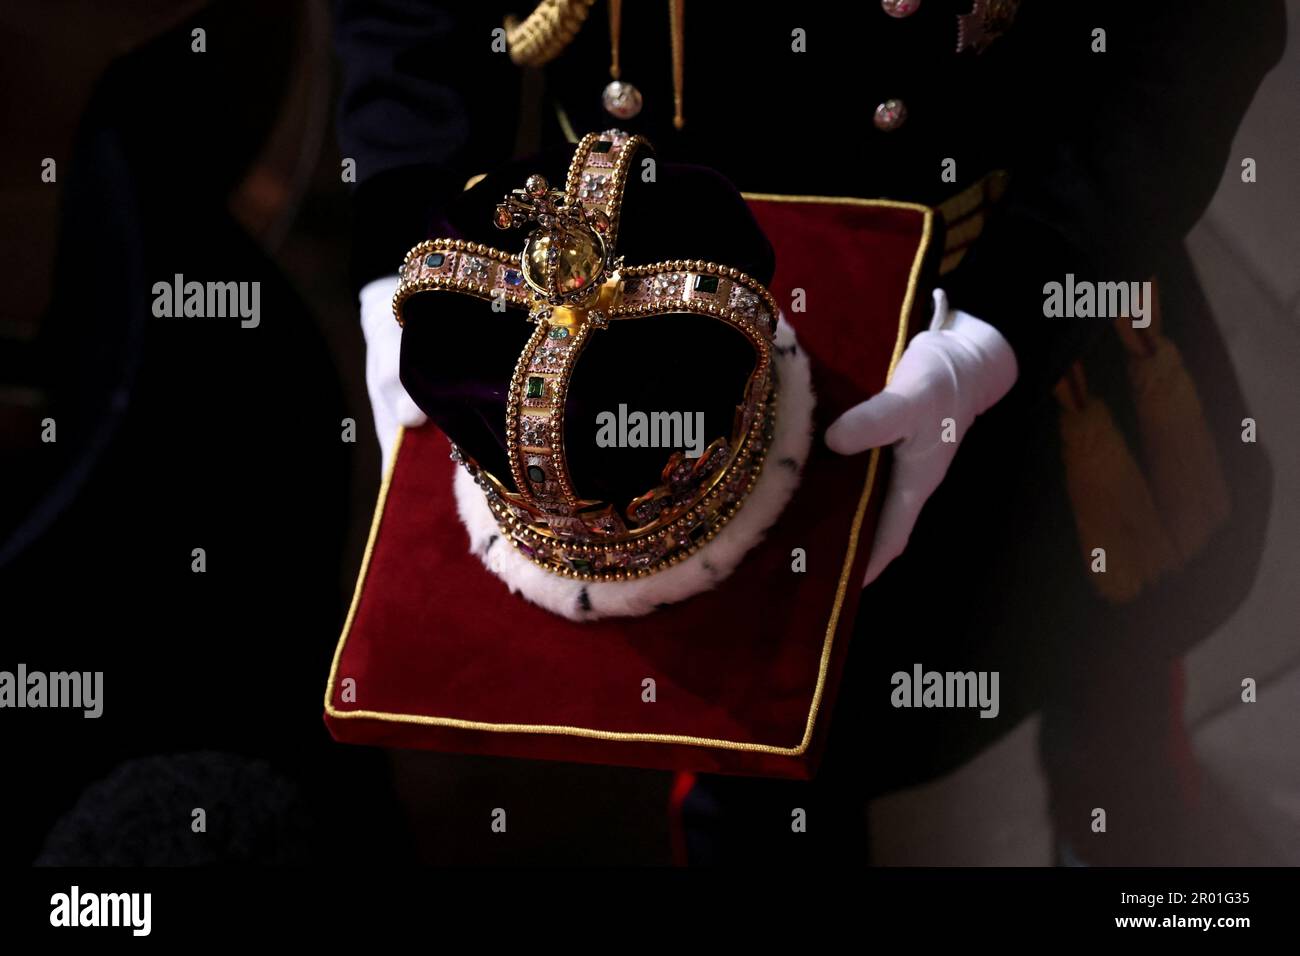 Ein allgemeiner Blick auf St. Edward's Crown auf einem Kissen während der Krönung von König Karl III. Und Königin Camilla in Westminster Abbey, London. Foto: Samstag, 6. Mai 2023. Stockfoto